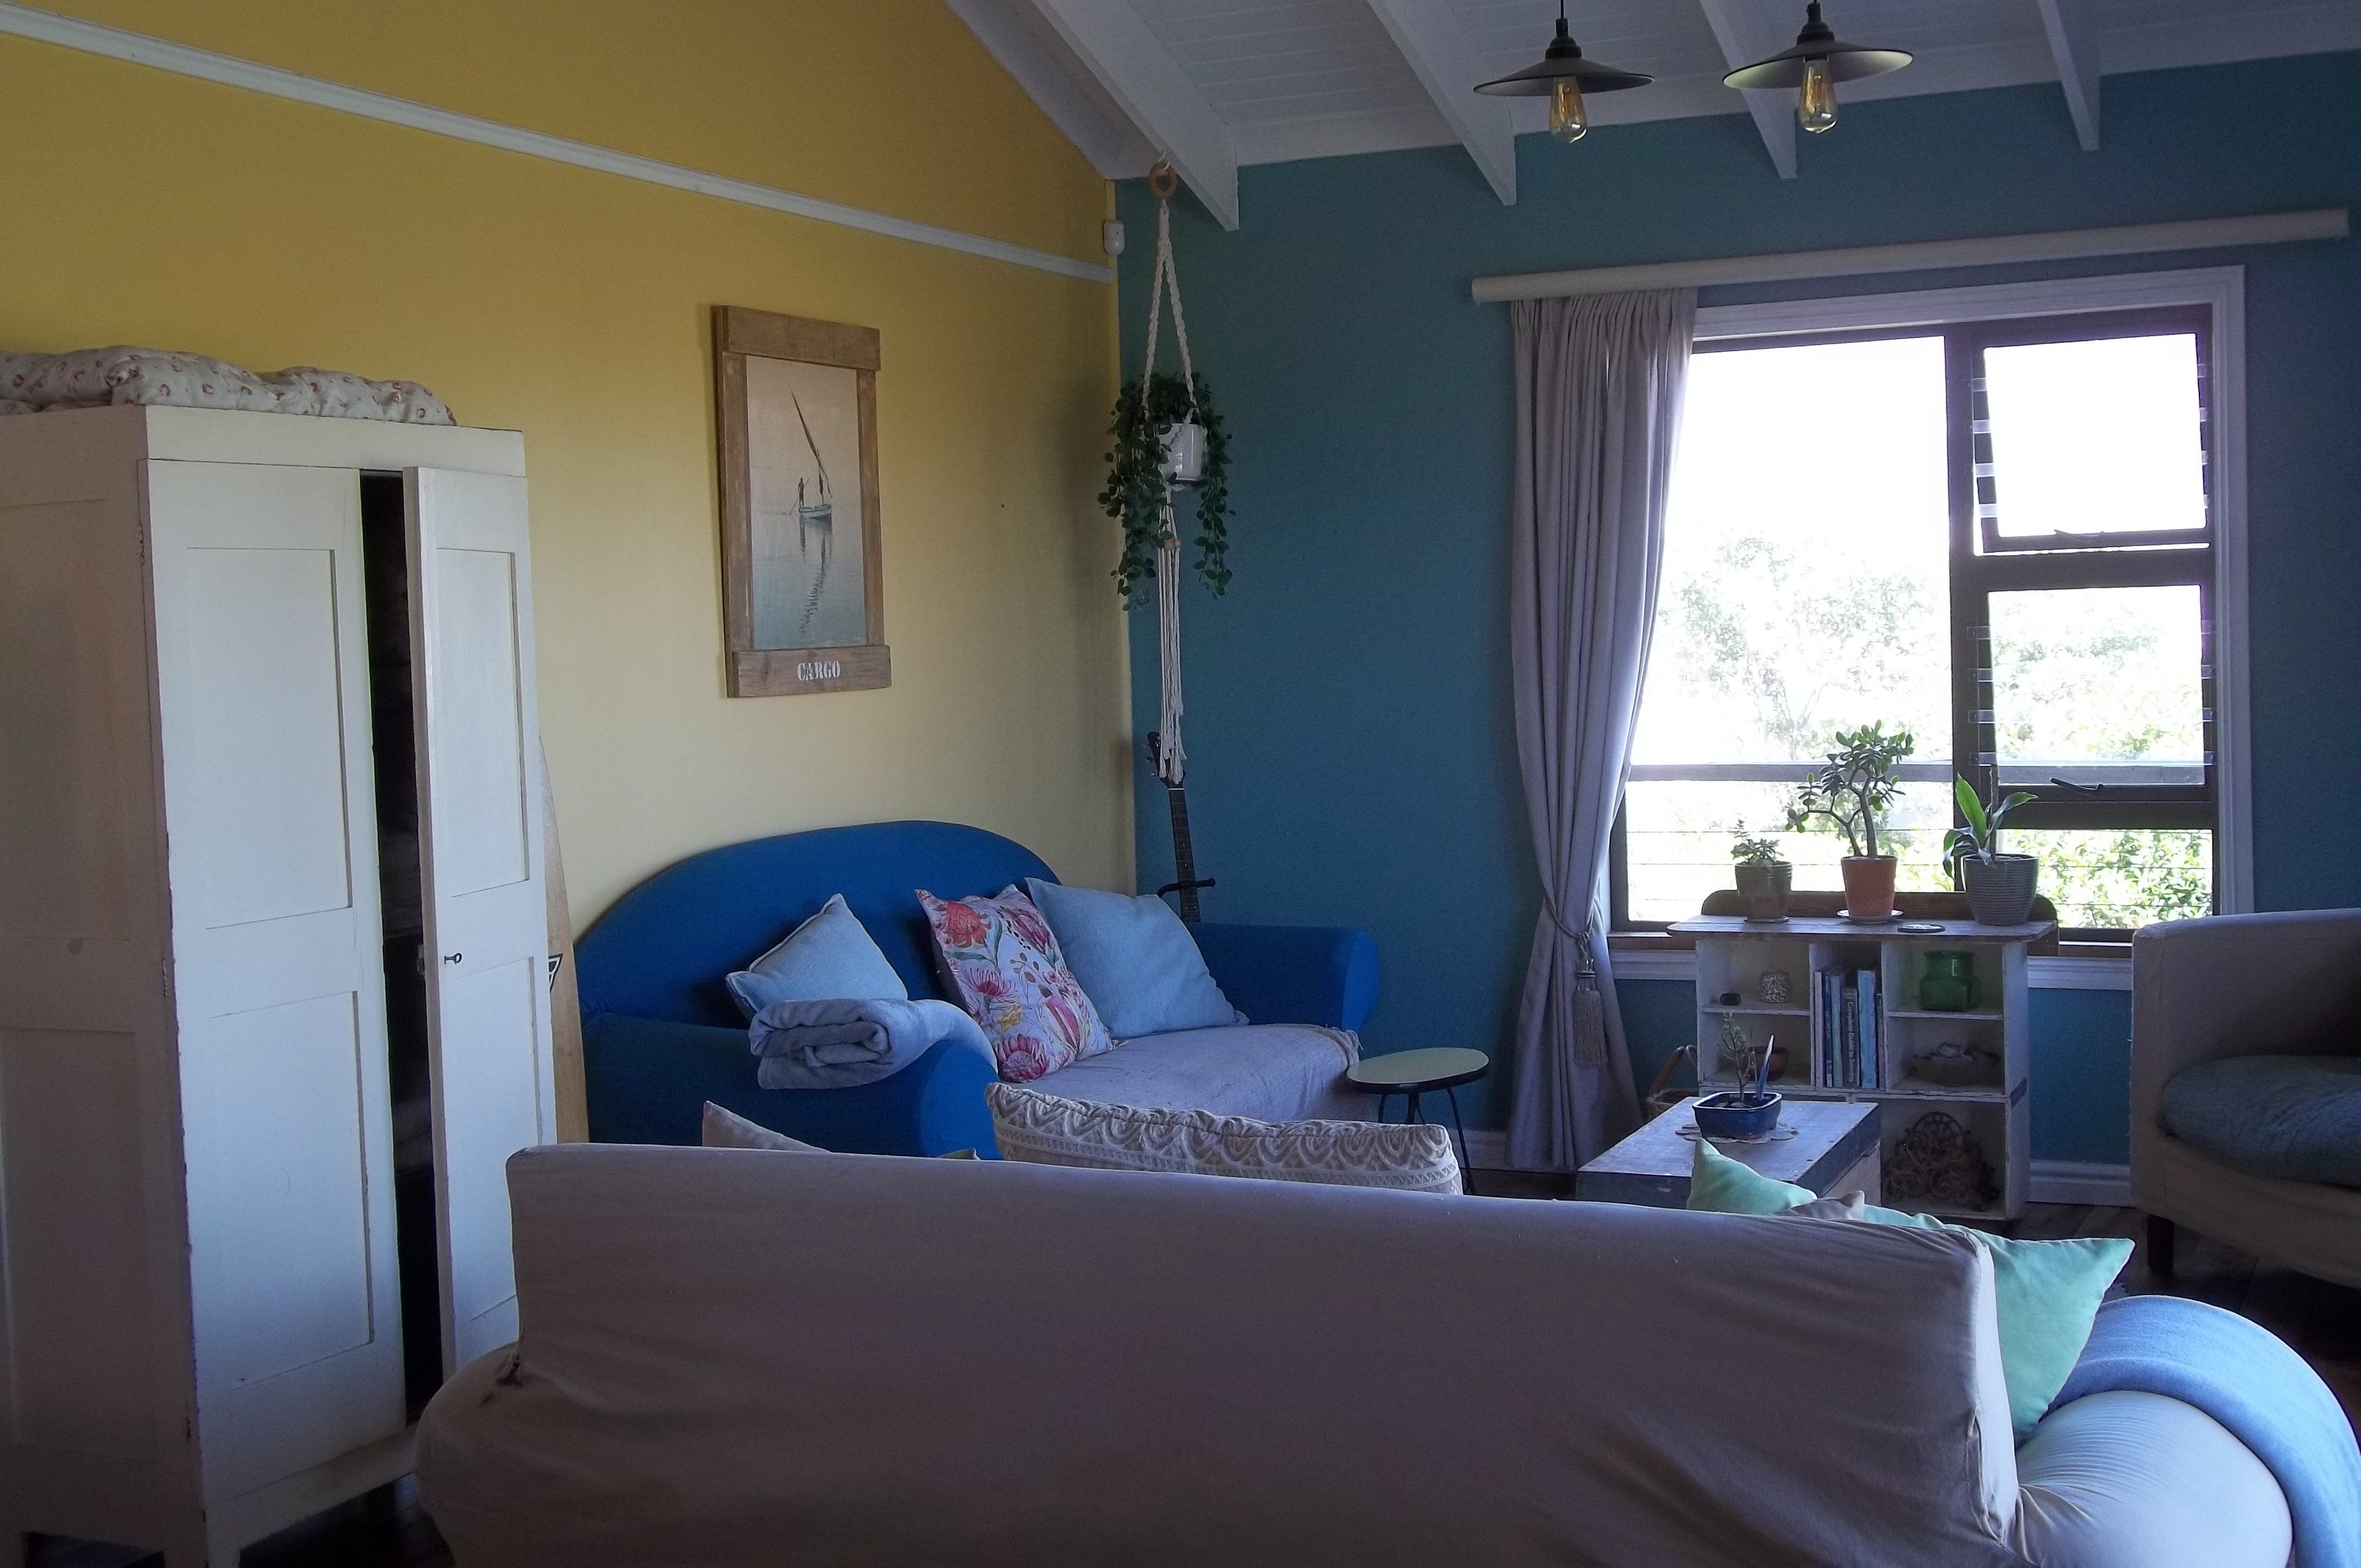 4 Bedroom Property for Sale in Kleinbaai Western Cape